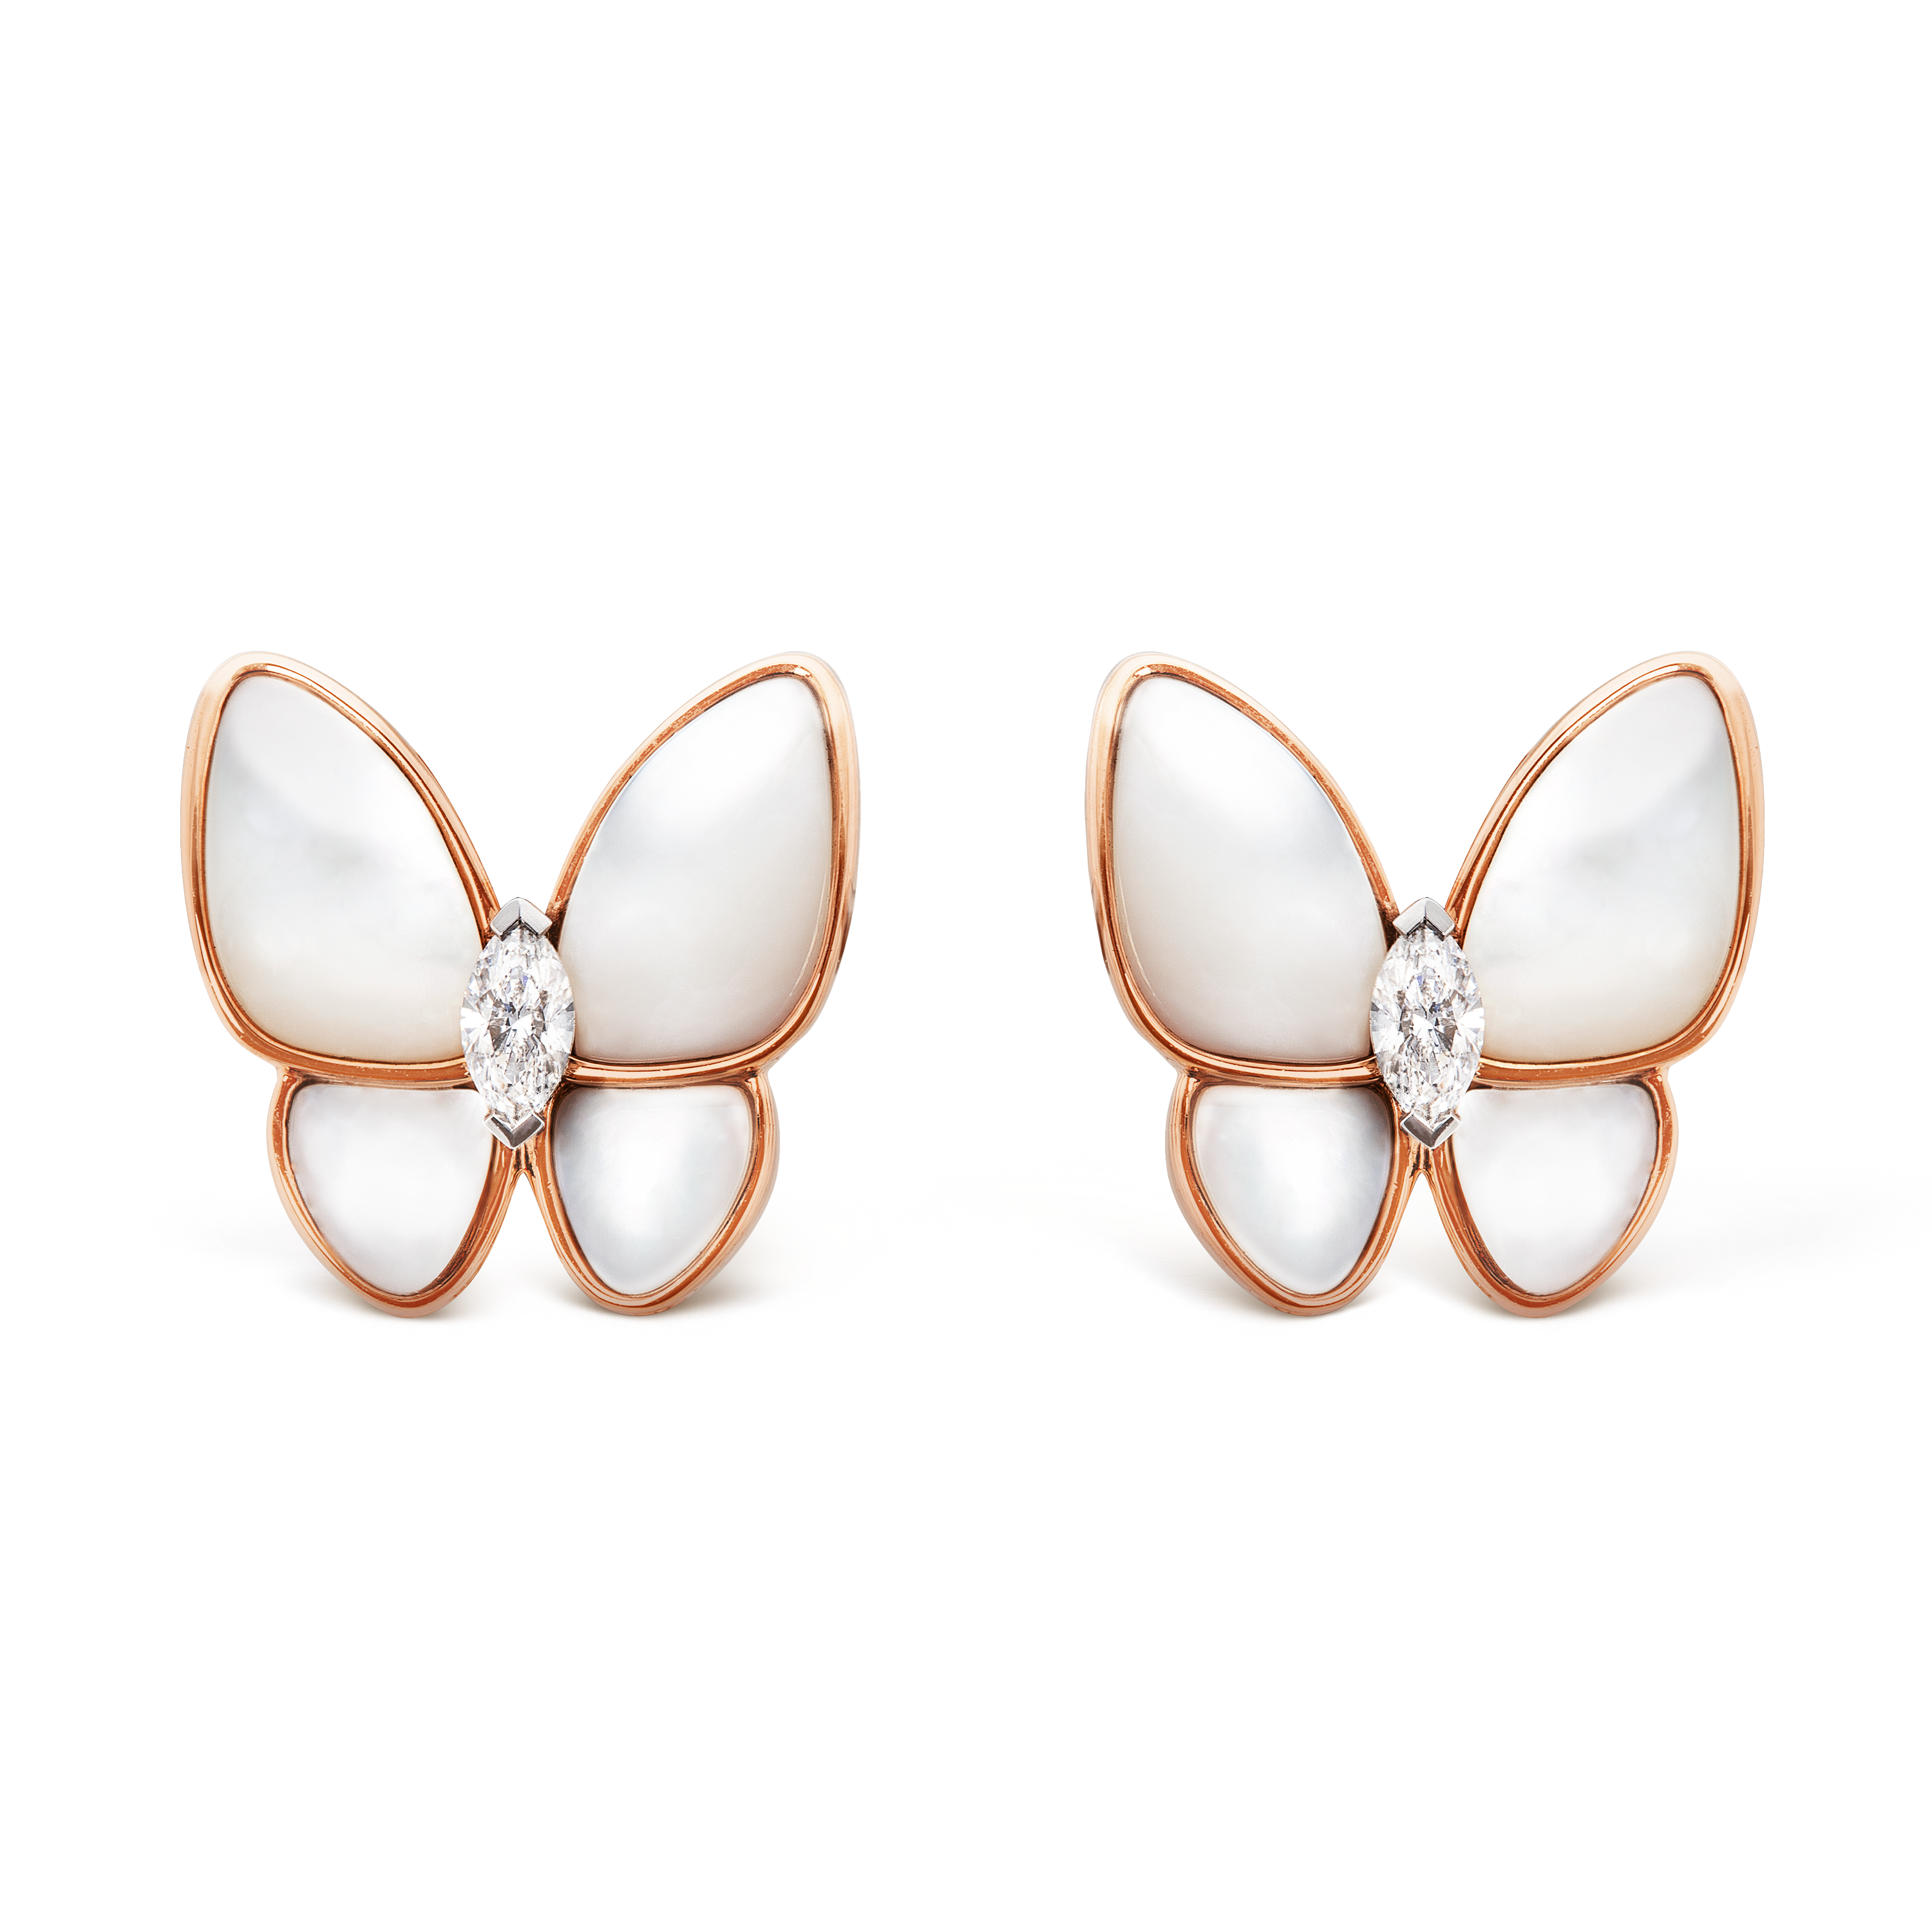 Two Butterfly Earrings